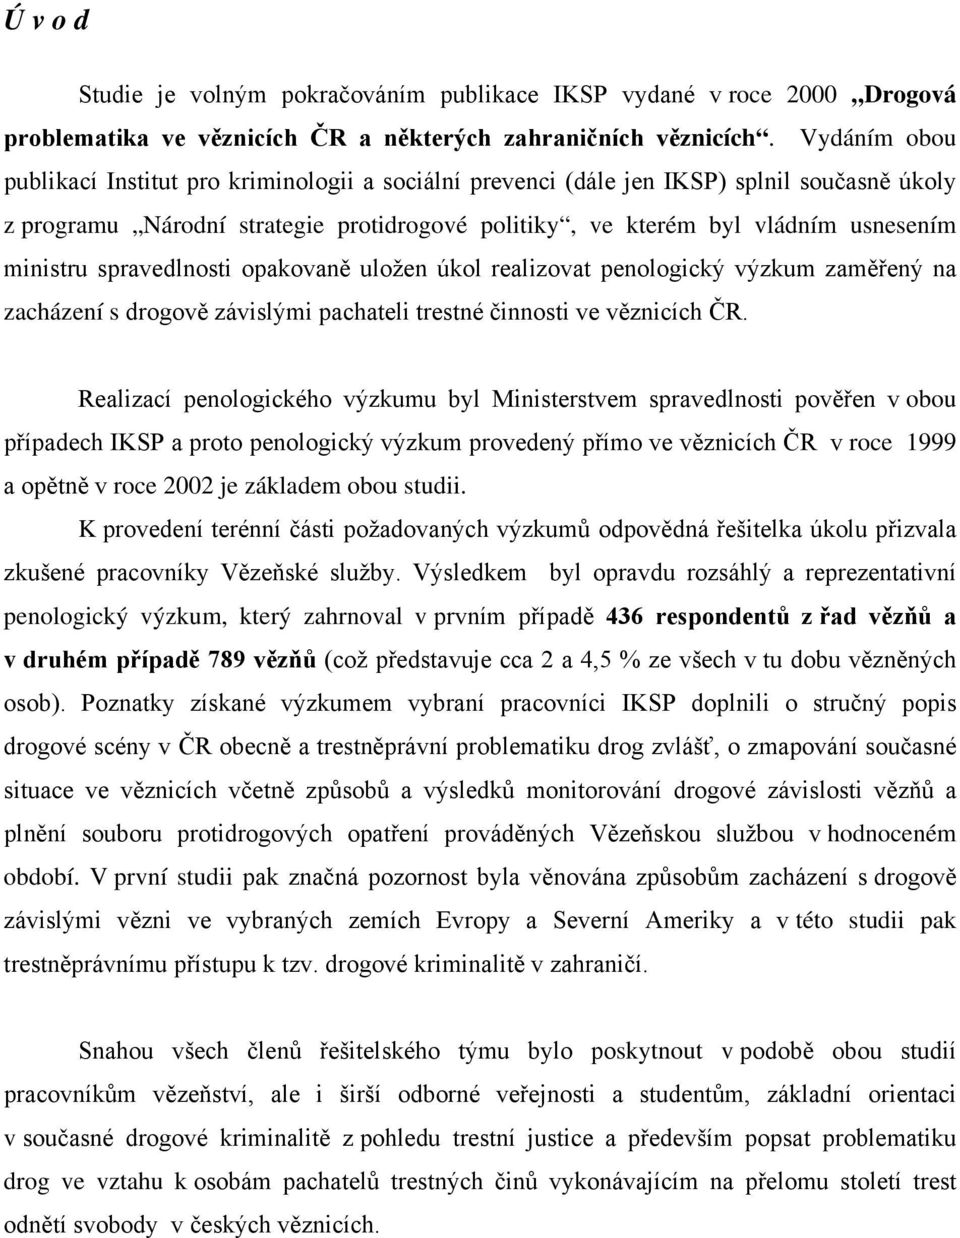 spravedlnosti opakovaně uložen úkol realizovat penologický výzkum zaměřený na zacházení s drogově závislými pachateli trestné činnosti ve věznicích ČR.